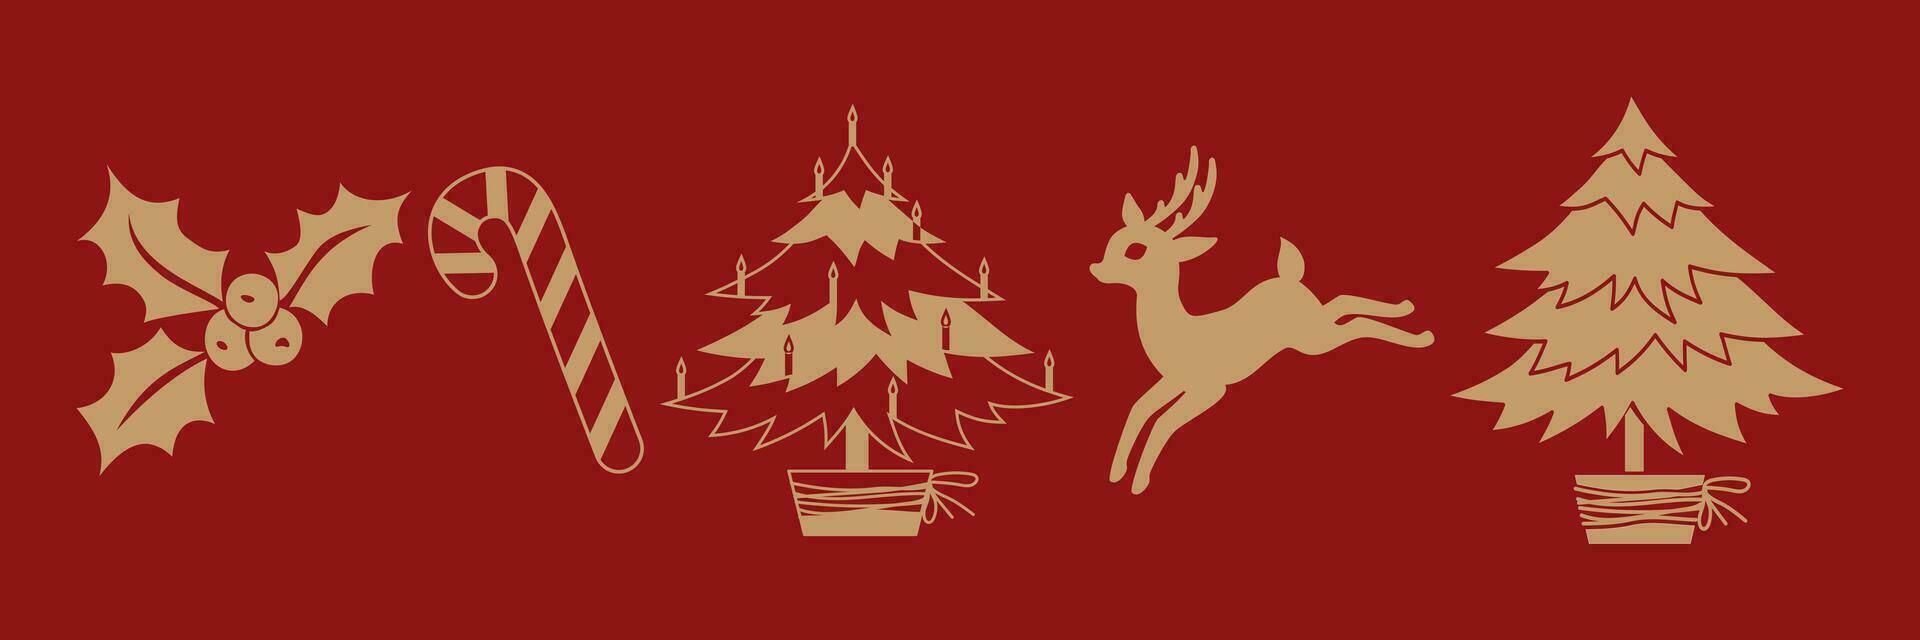 Weihnachten und Neu Jahr traditionell Symbole auf ein rot Hintergrund. Rentier, Süßigkeiten Stock, Stechpalme Beeren, Weihnachten Baum. dekorativ Elemente zum festlich Design von Winter Feiertage.Vektor Illustration. vektor